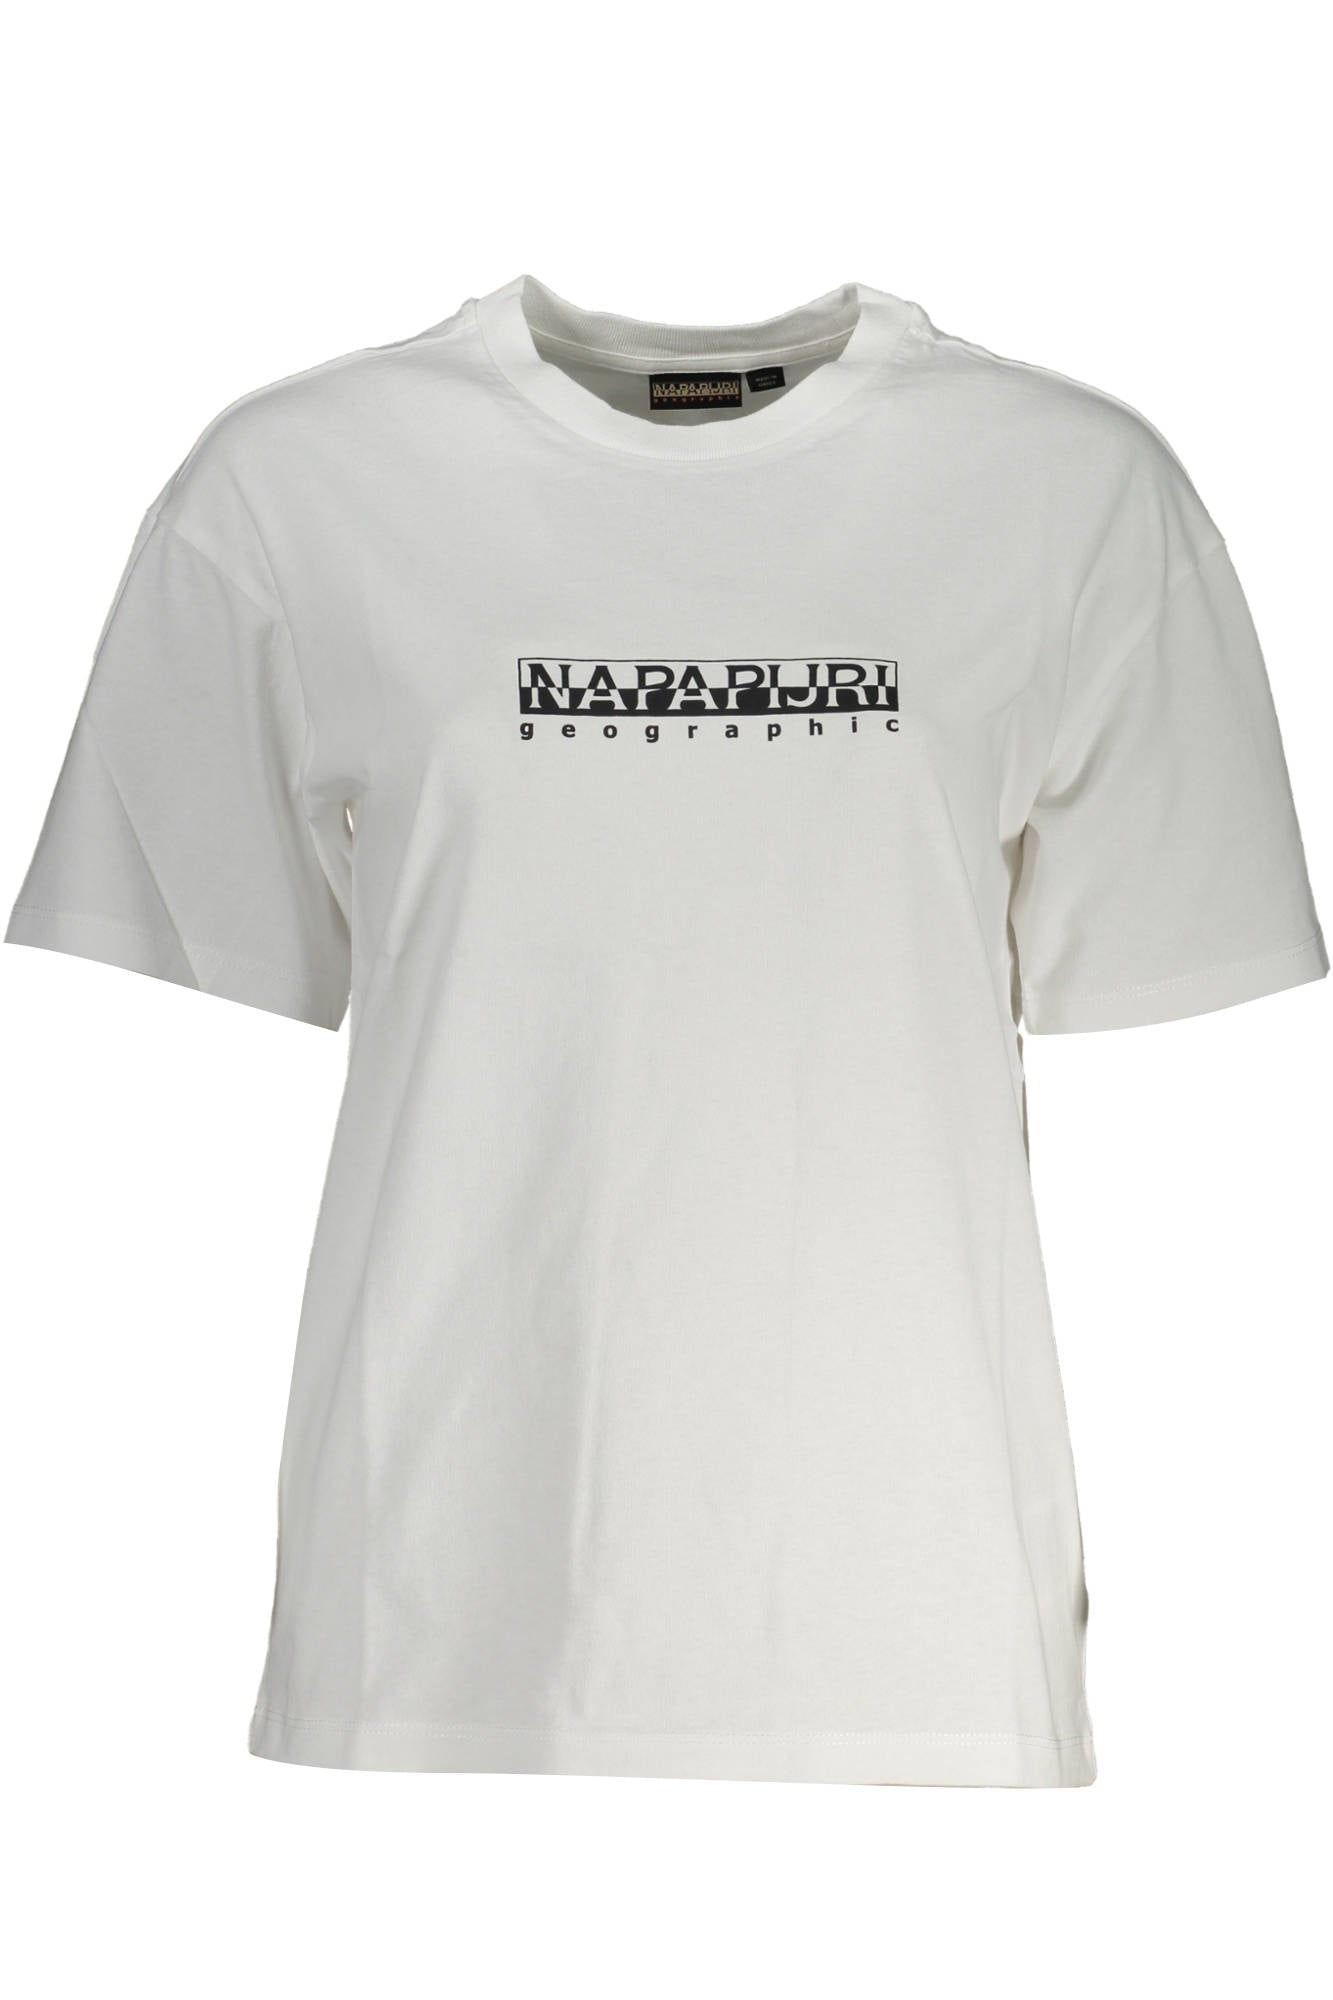 Napapijri White Cotton Tops & T-Shirt - Fizigo